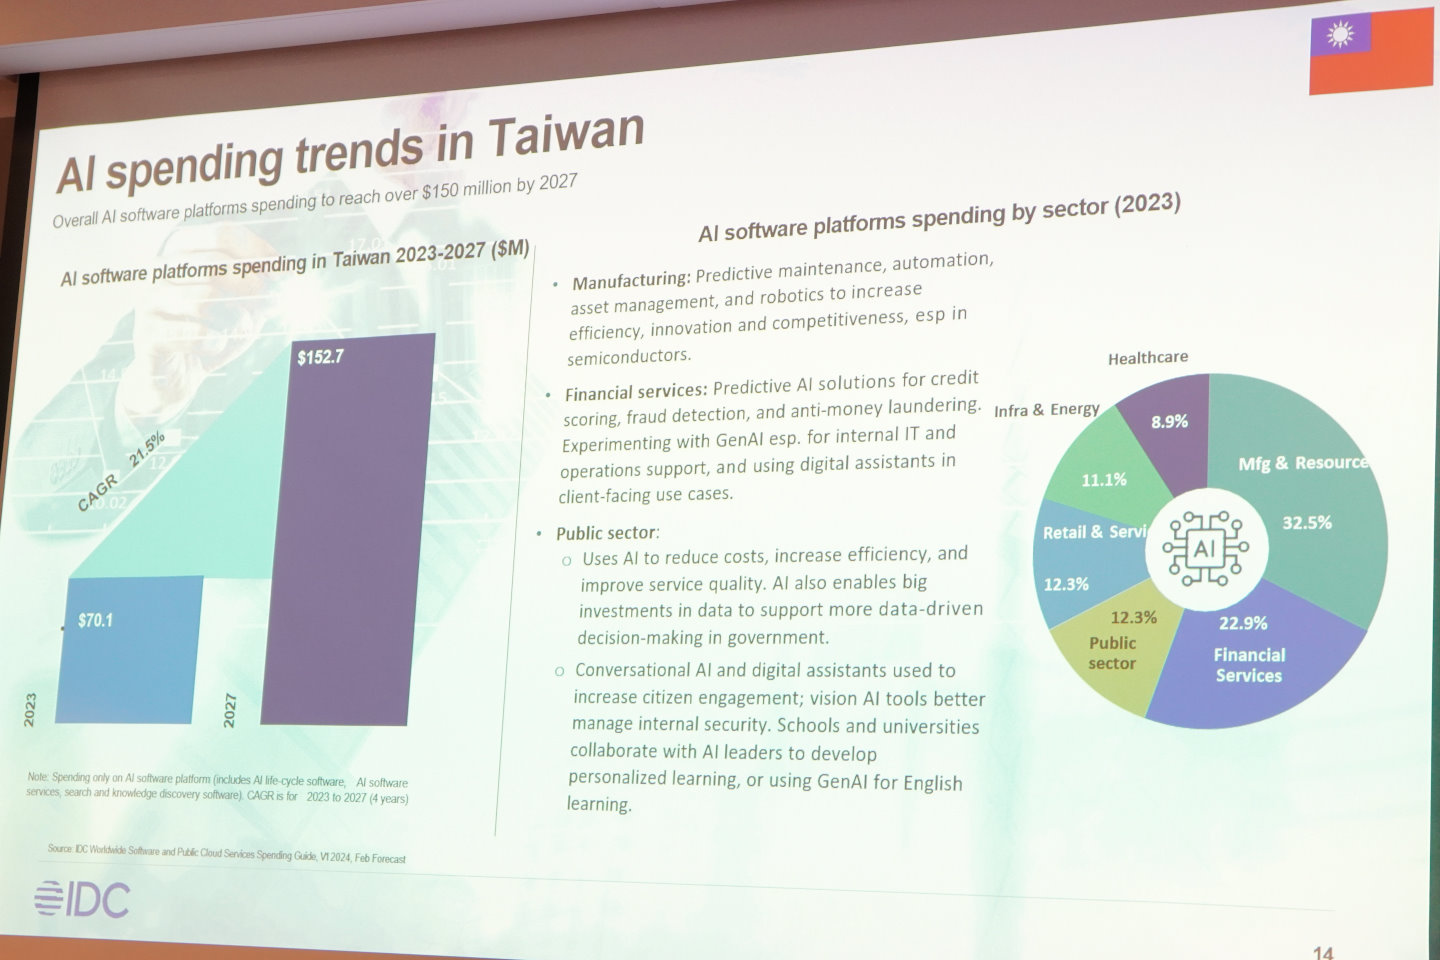 台灣2023年AI軟體平台的支出美金7010萬元，預估在2027年達到1.527萬元，年均複合成長率達21.5%。